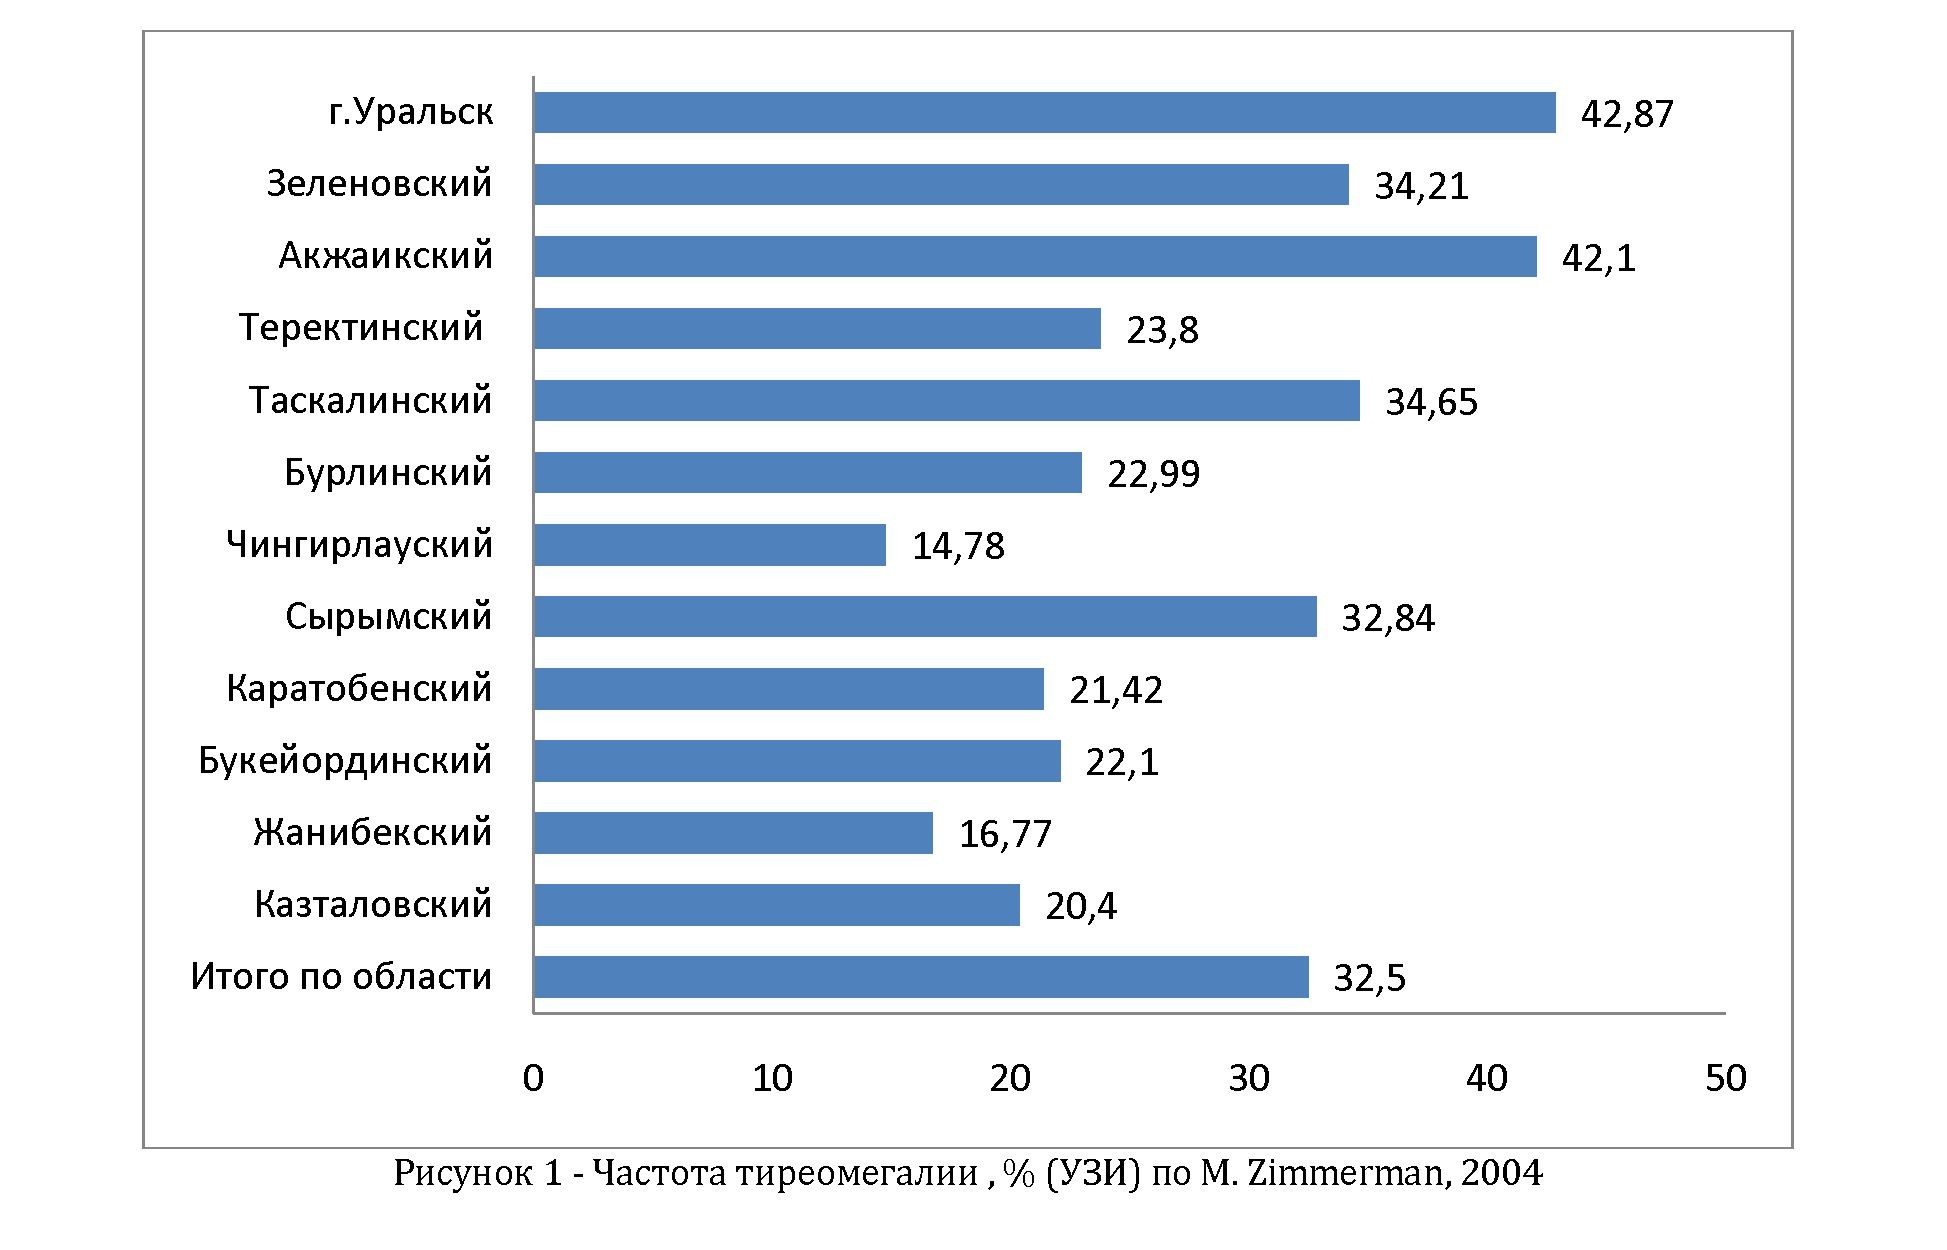 Распространенность тиреомегалии в западно-казахстанской области по данным ультразвукового исследования щитовидной железы